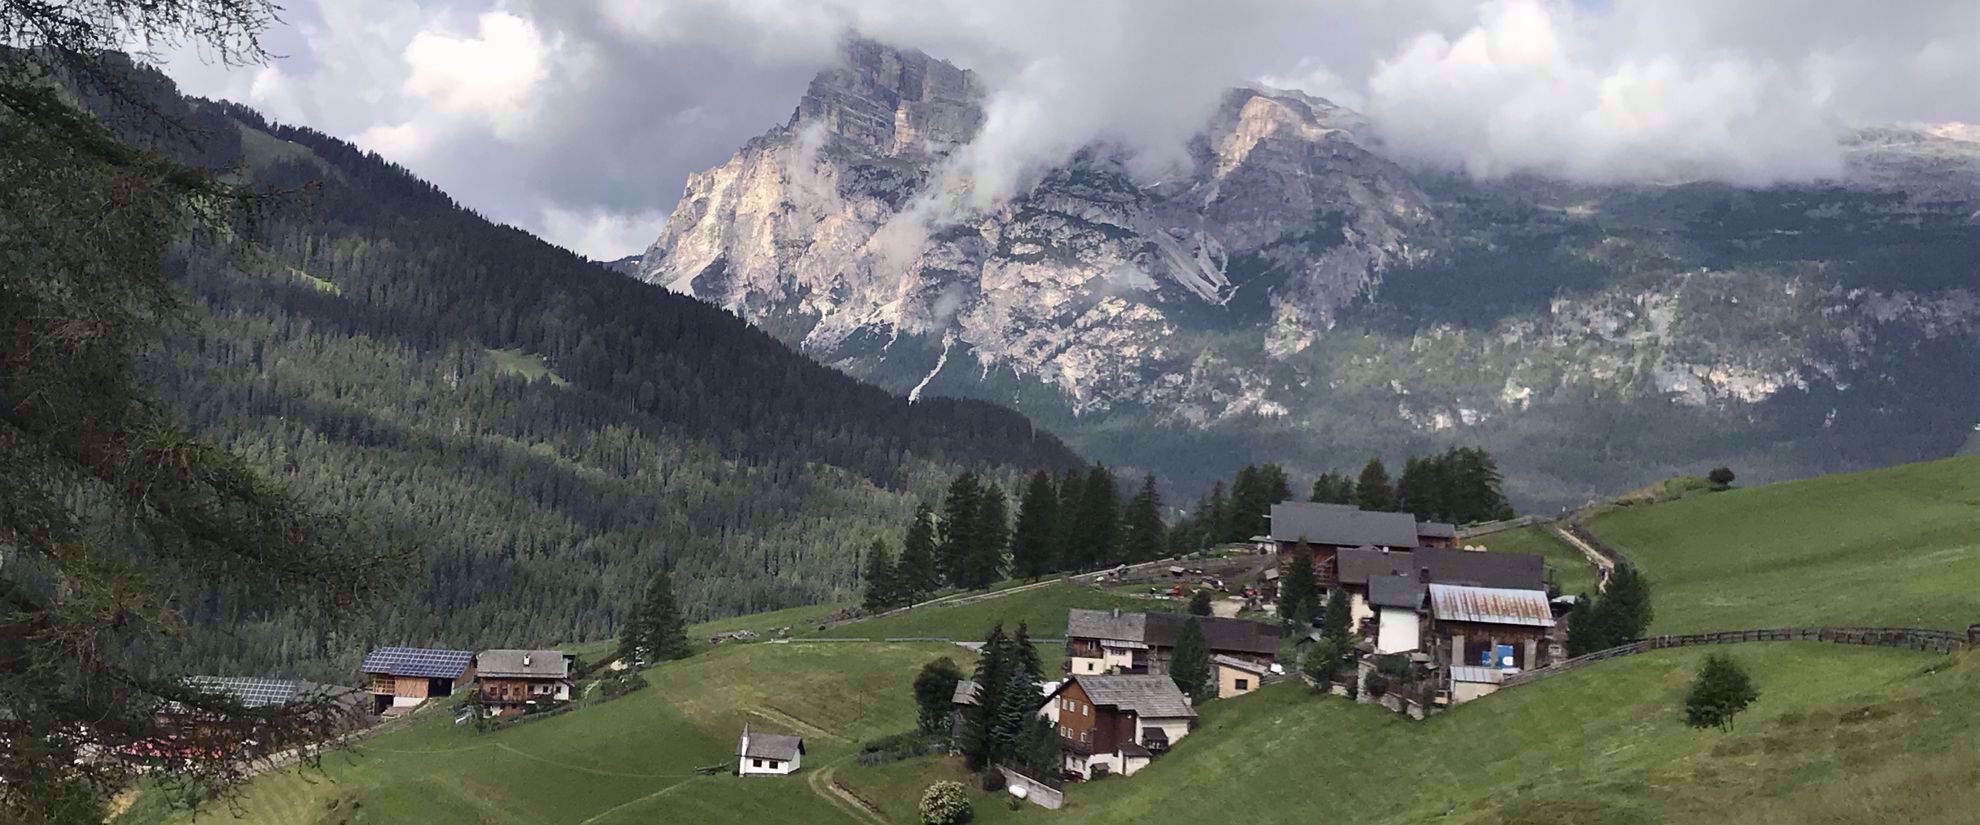 small village in italian alps